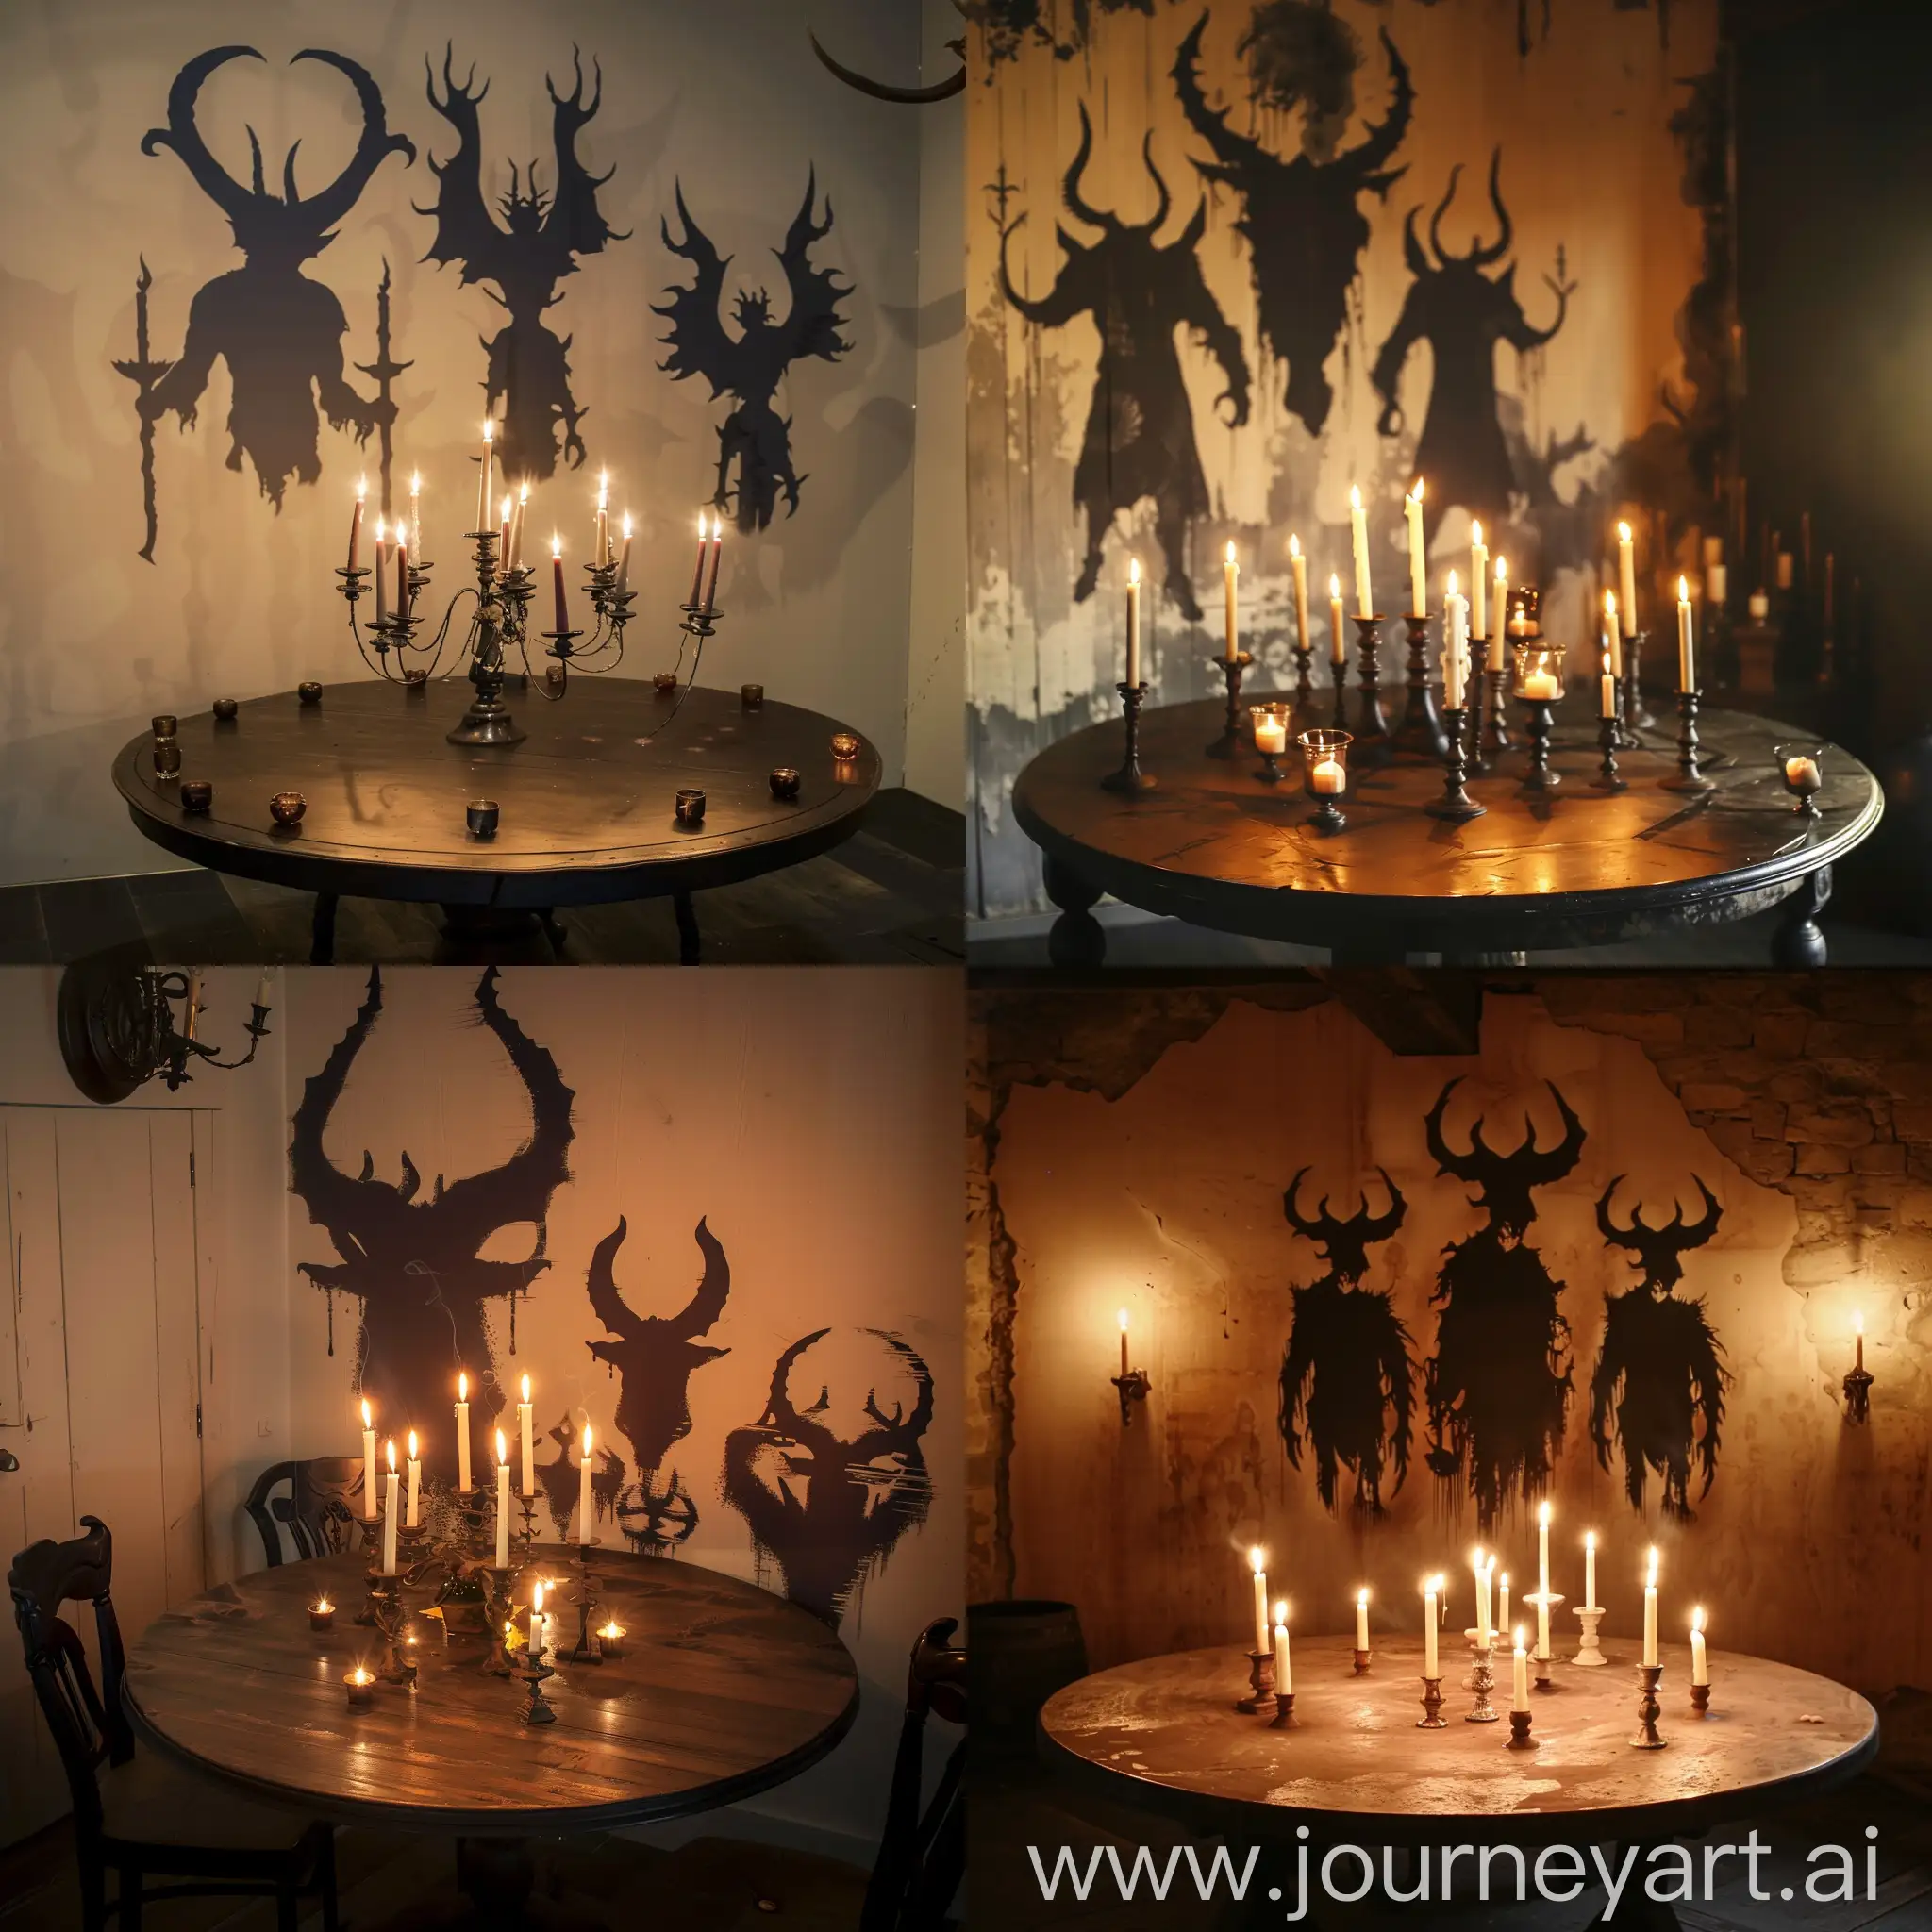 Круглый стол с горящими свечами, на стене за столом силуэты рогатых фигур